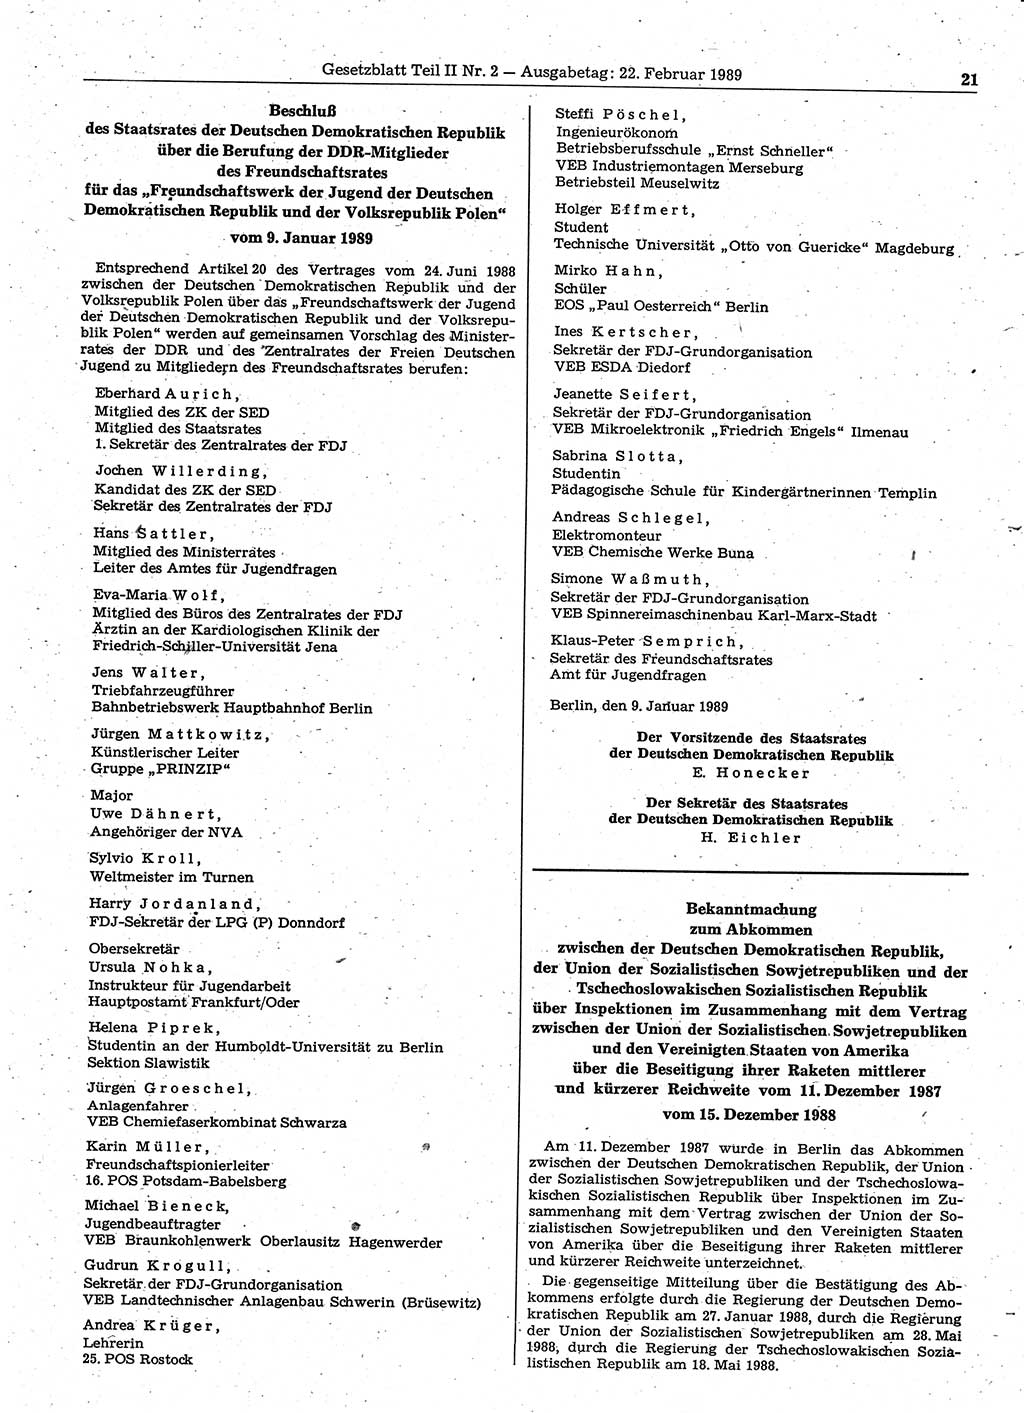 Gesetzblatt (GBl.) der Deutschen Demokratischen Republik (DDR) Teil ⅠⅠ 1989, Seite 21 (GBl. DDR ⅠⅠ 1989, S. 21)